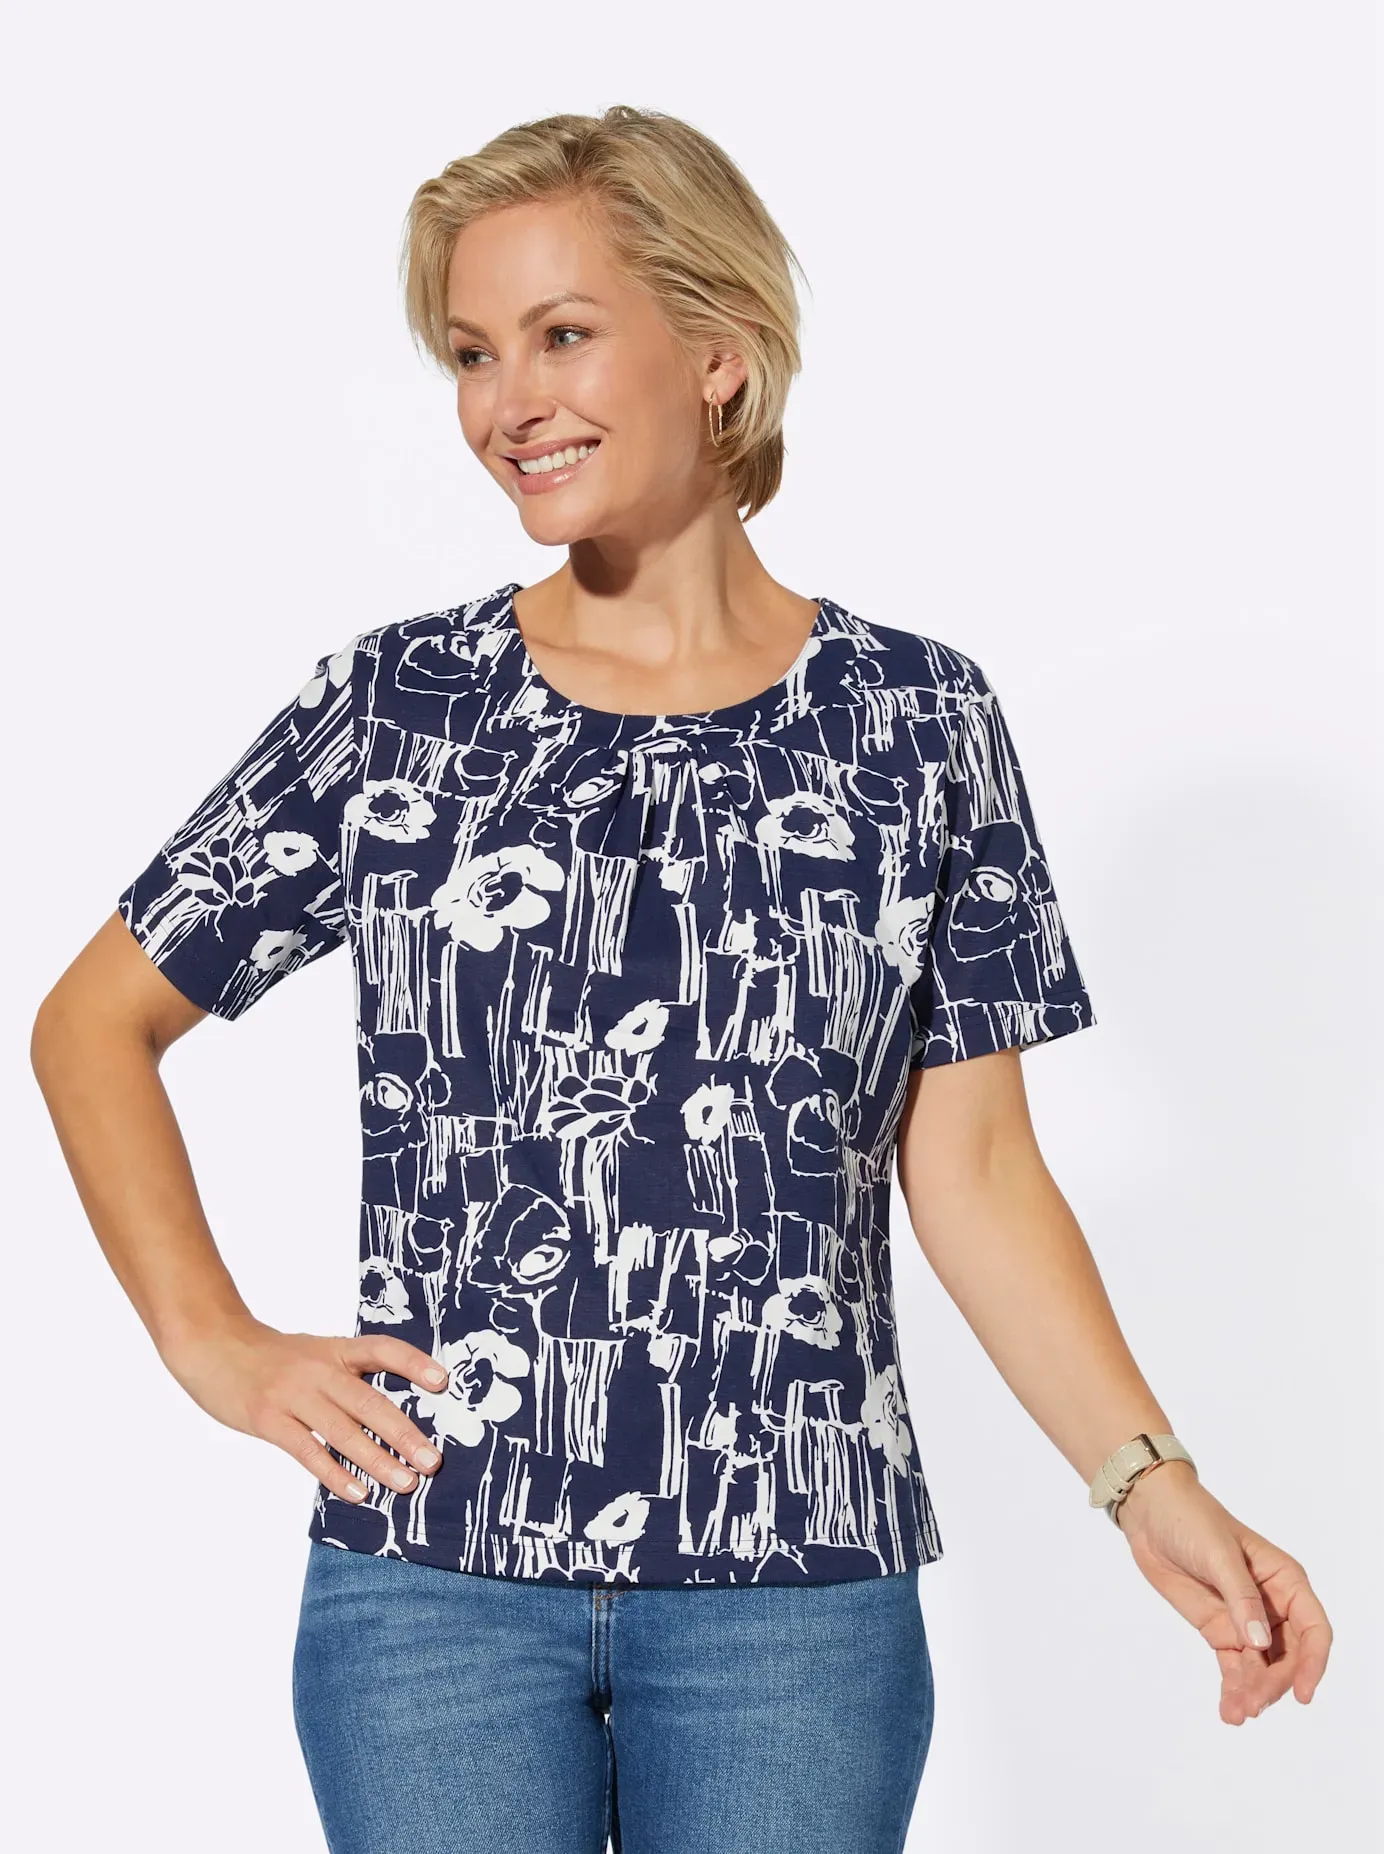 Kurzarmshirt "Shirt" Gr. 48, blau (marine, marine, weiß, bedruckt) Damen Shirts Jersey